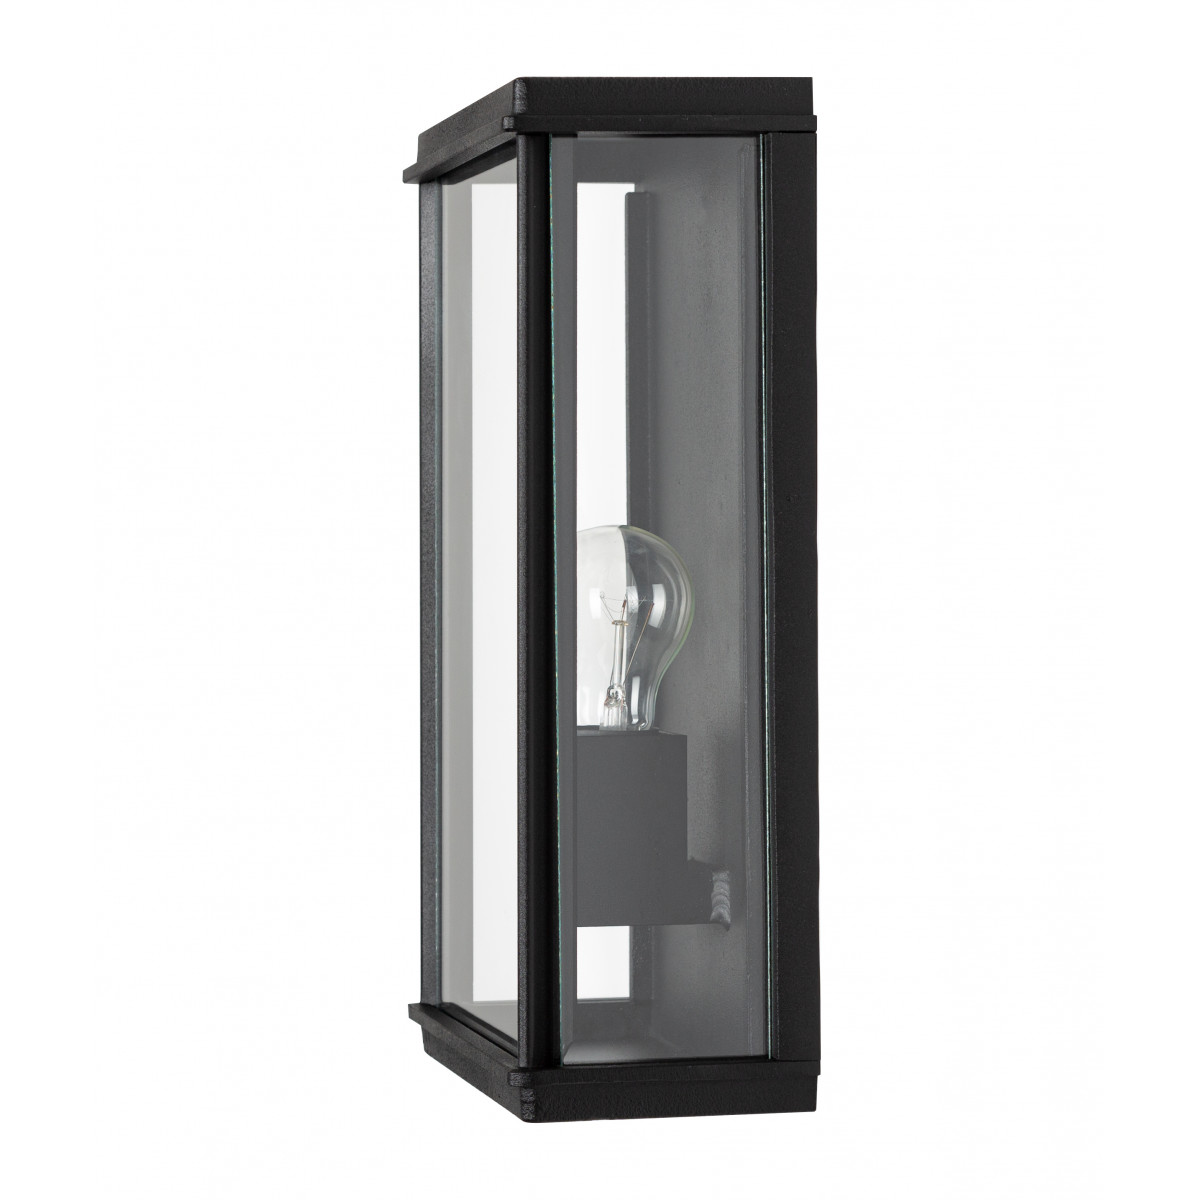 Lampe d'extérieur base rectangulaire, noire élégante Capital XL applique plate éclairage extérieur exclusif d'excellente qualité, pour l'extérieur